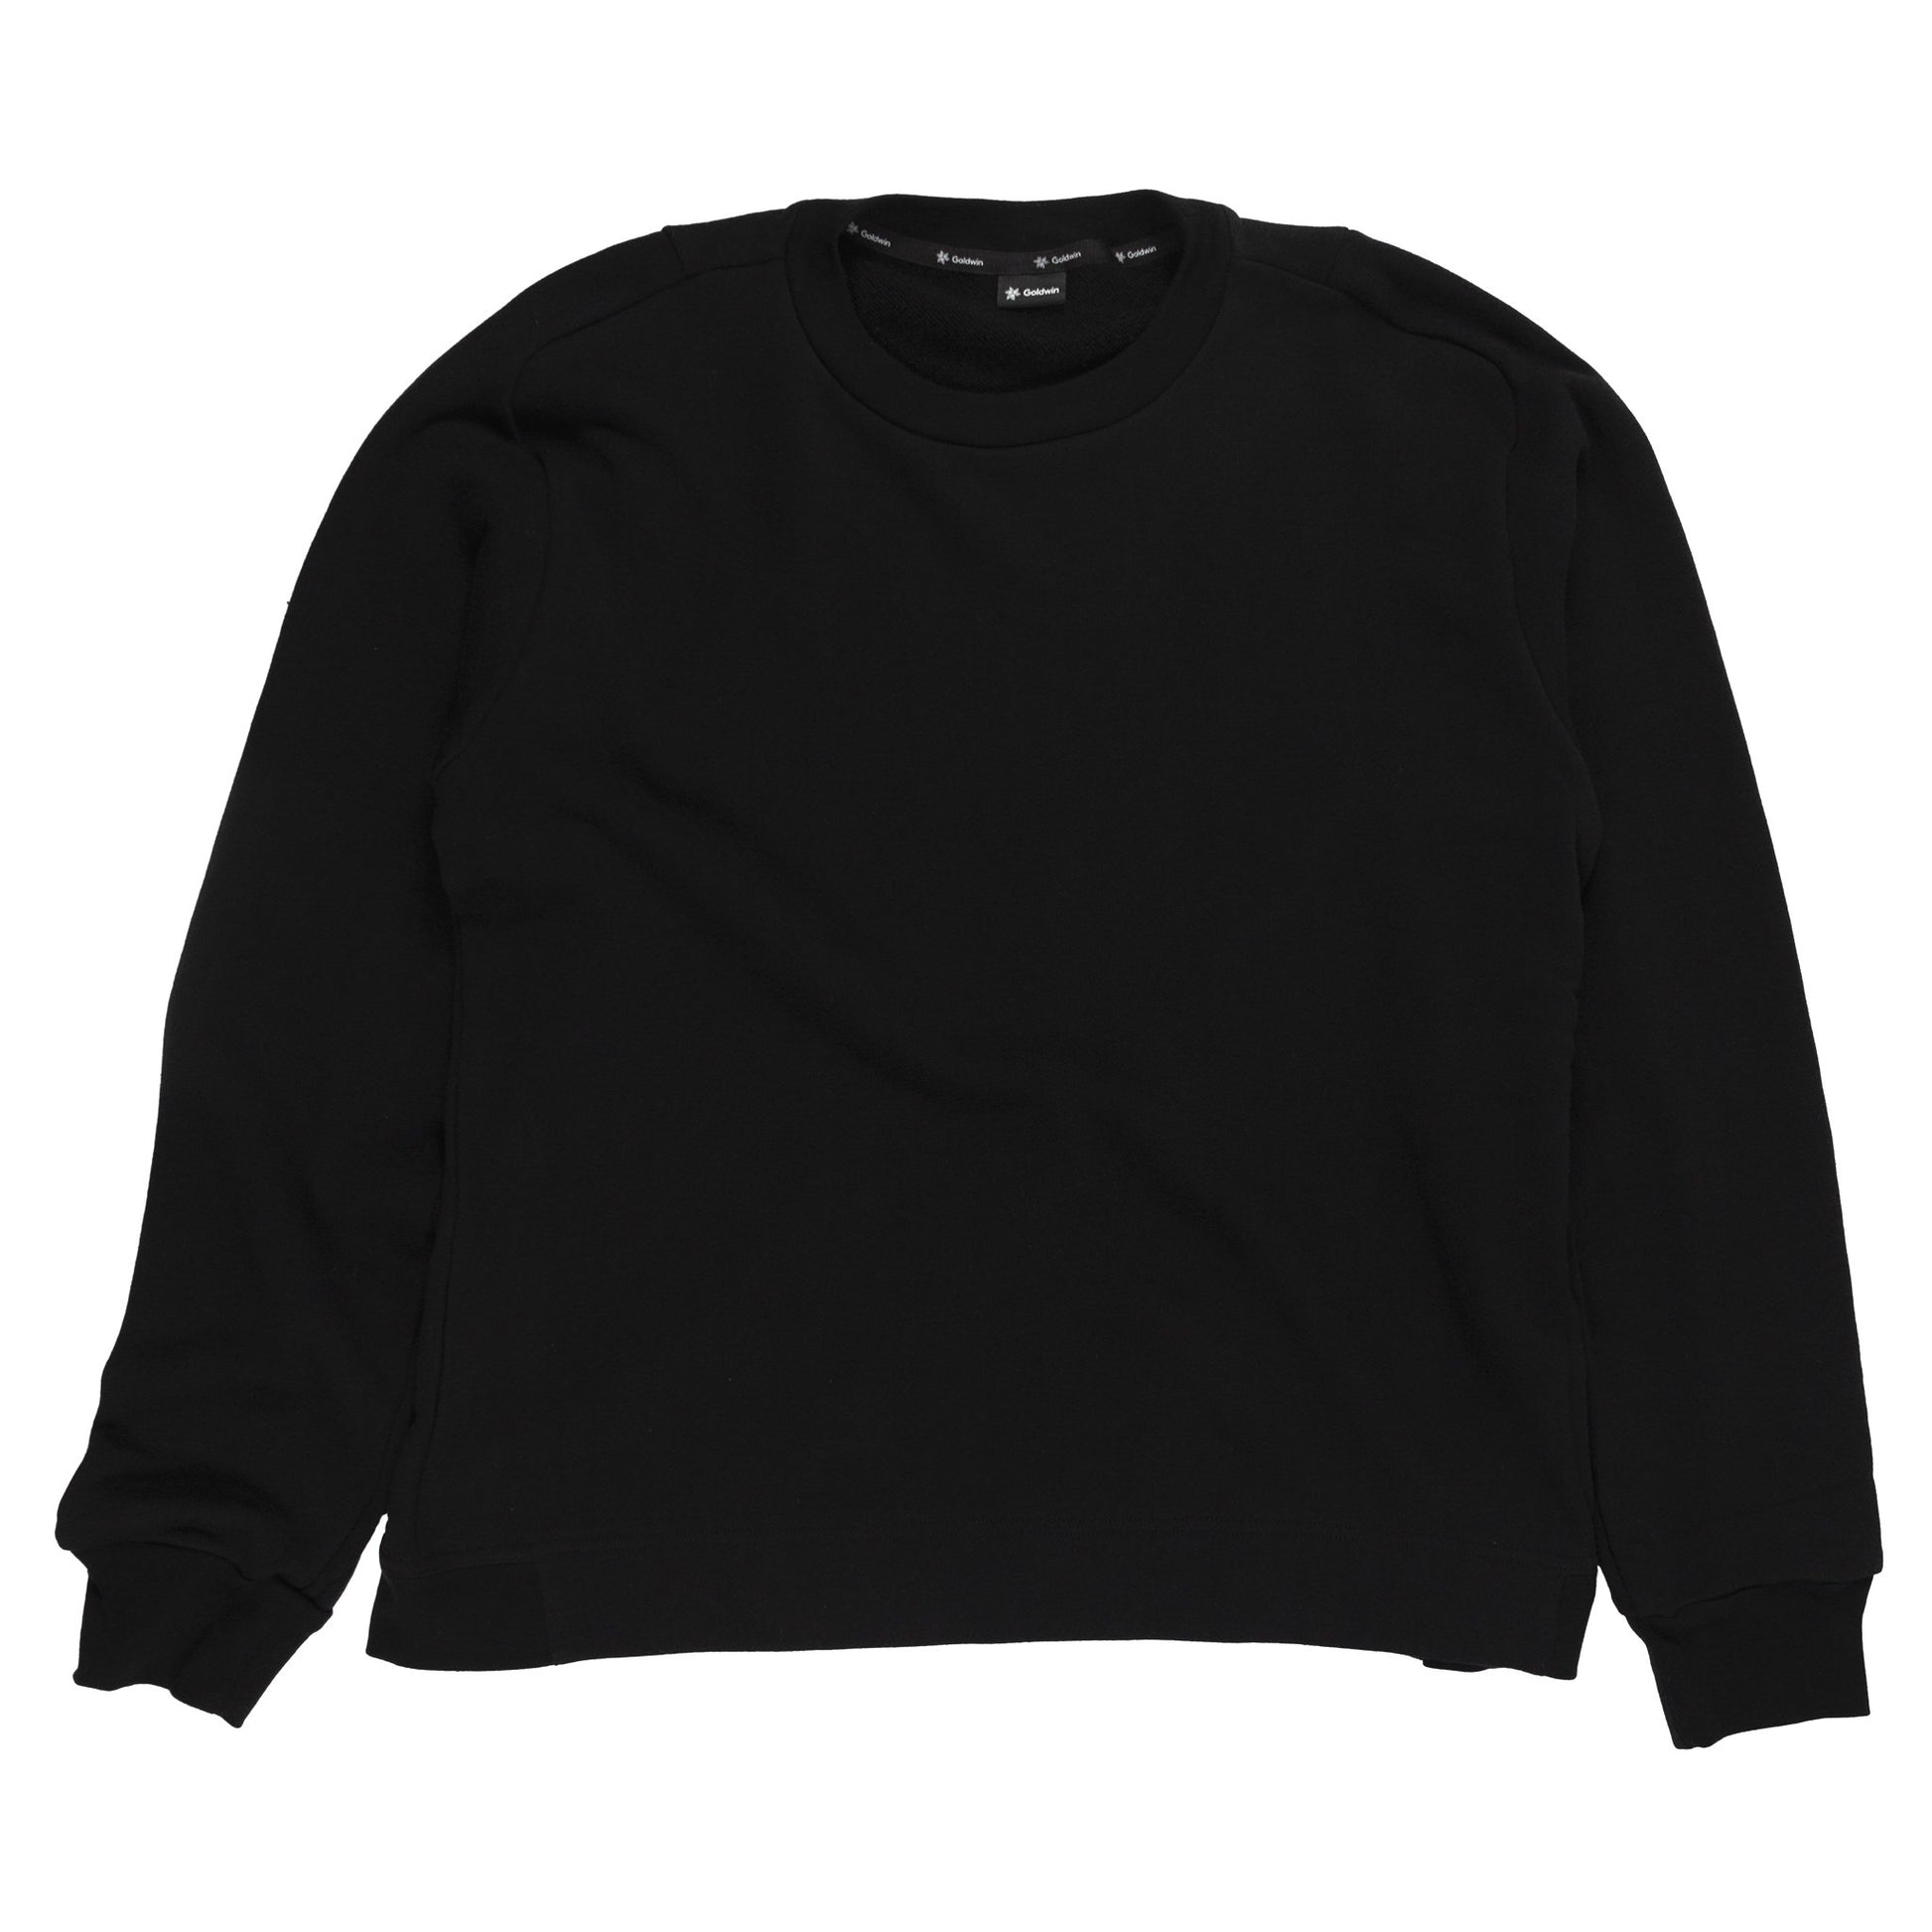 Goldwin Crewneck Sweatshirt in Black sweater front